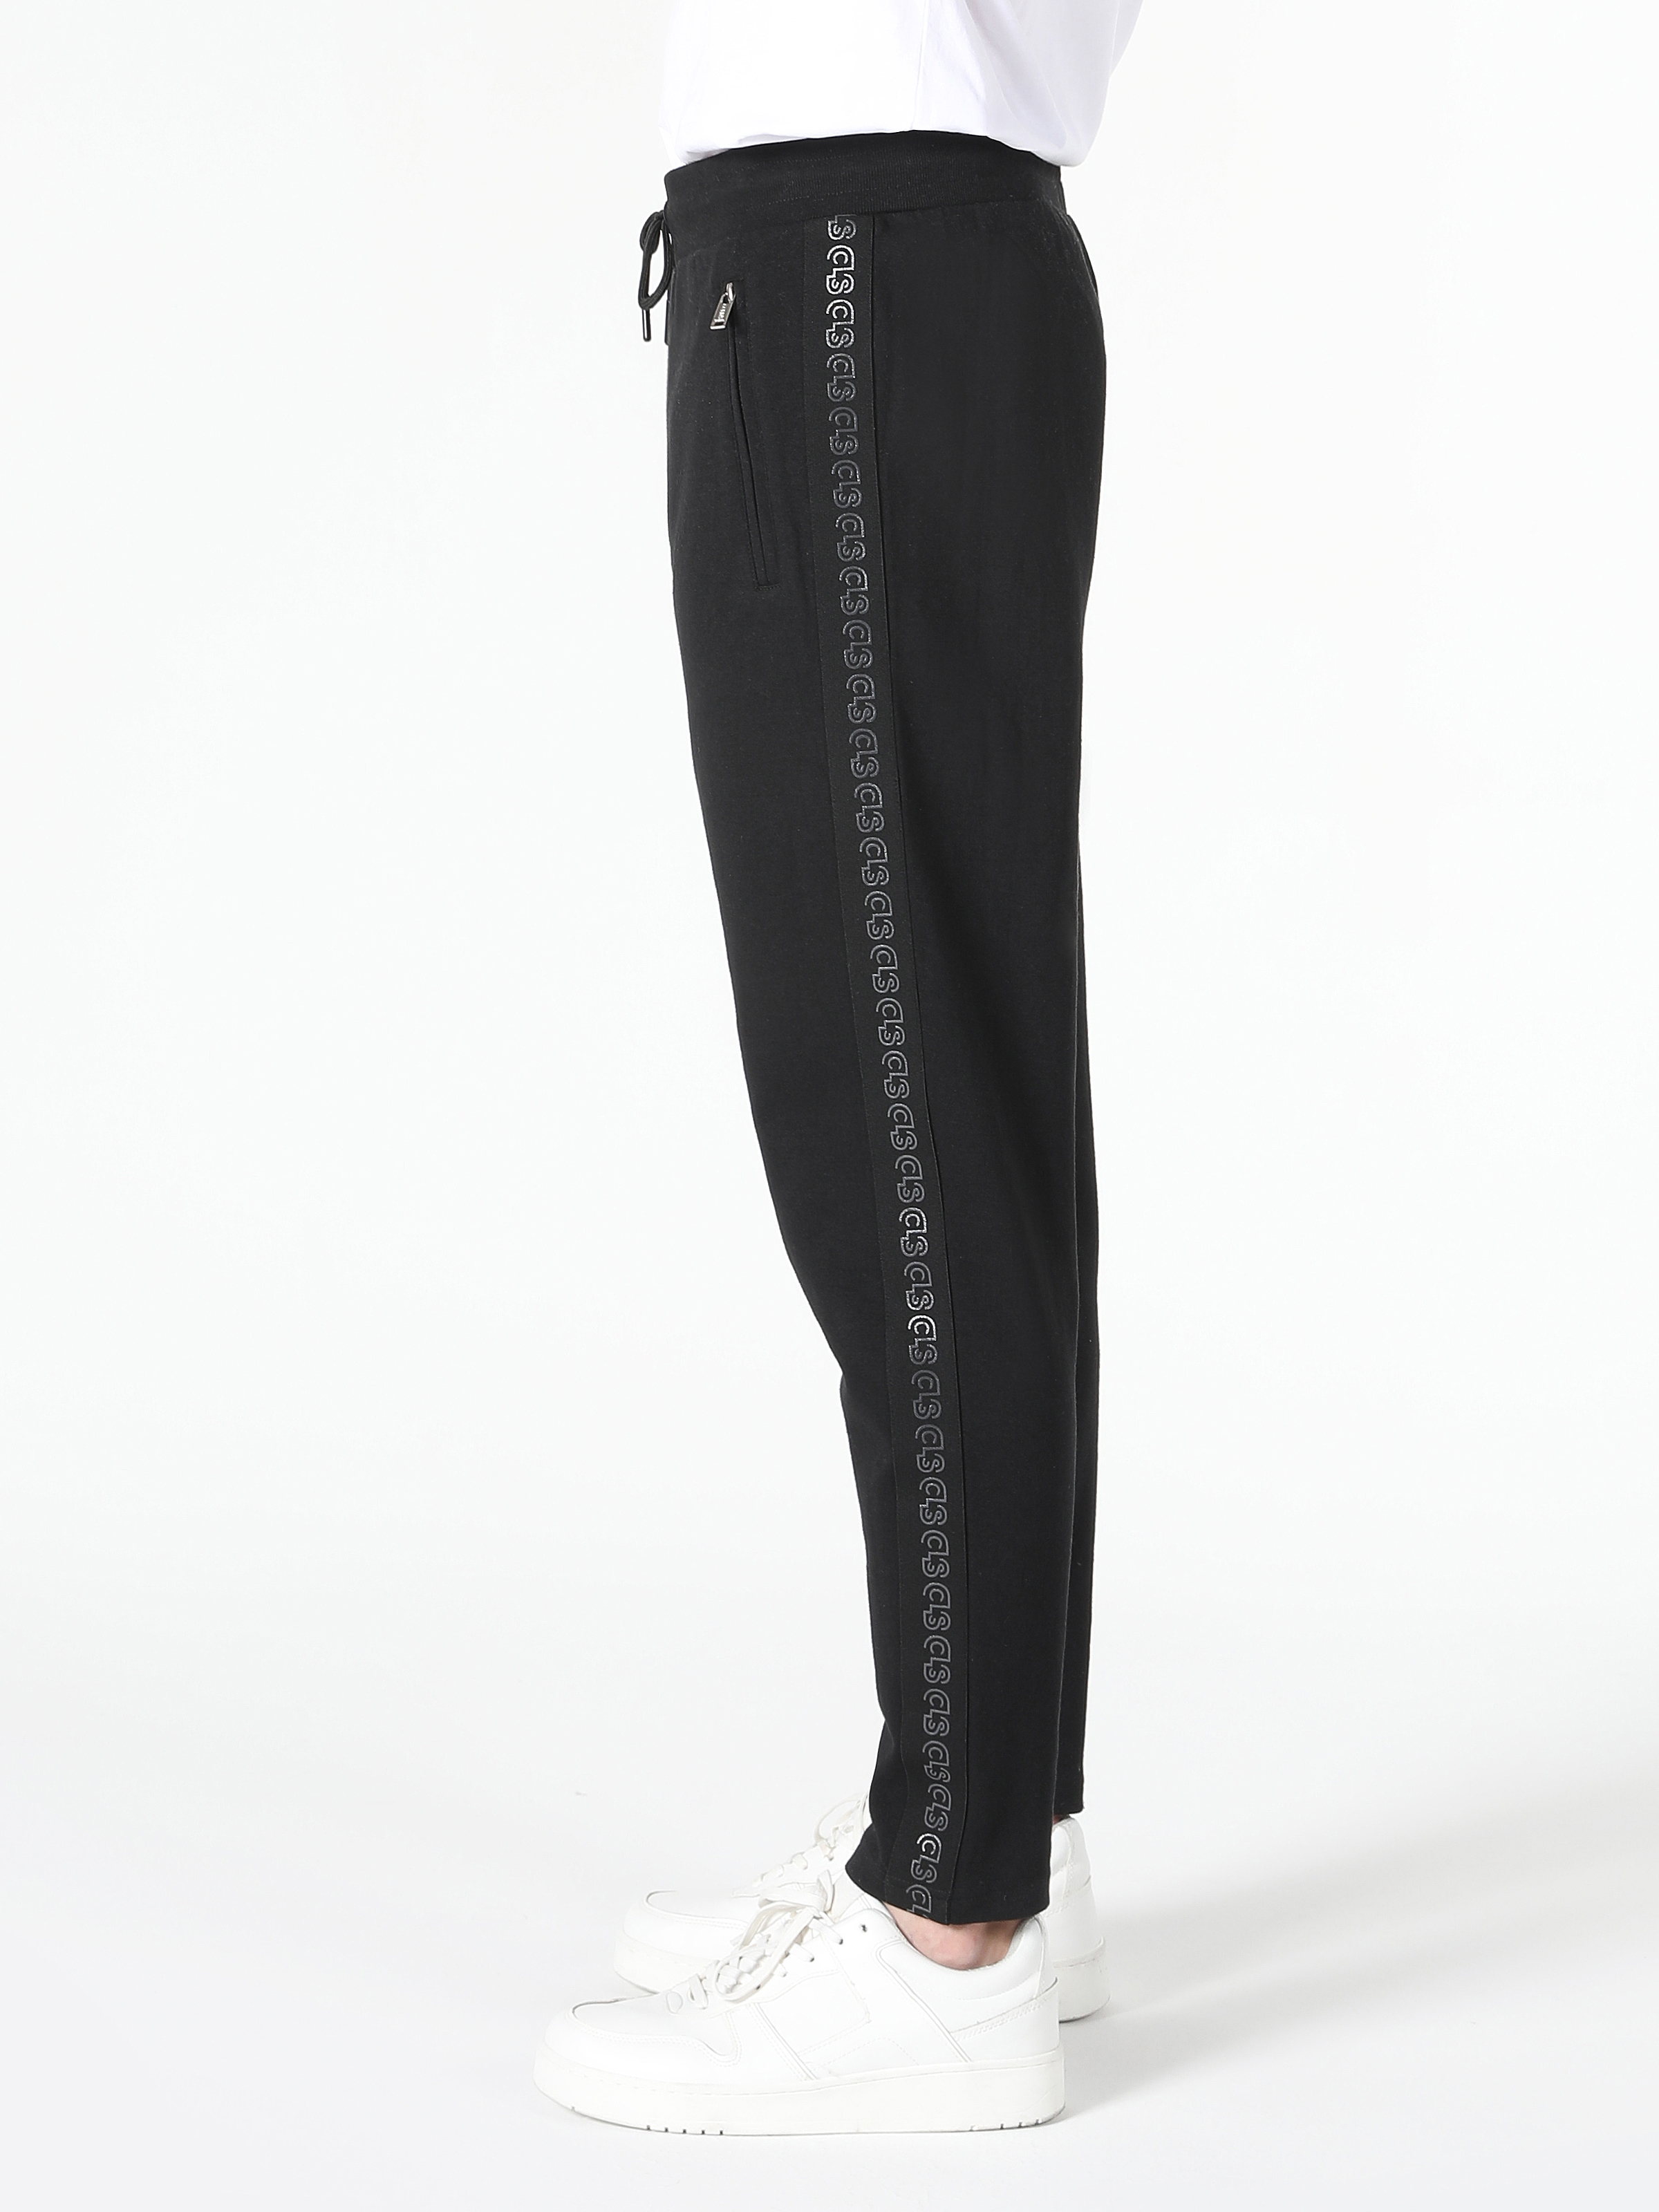 Afficher les détails de Pantalon De Survêtement Noir Multi-Poches Taille Moyenne Coupe Slim Pour Homme